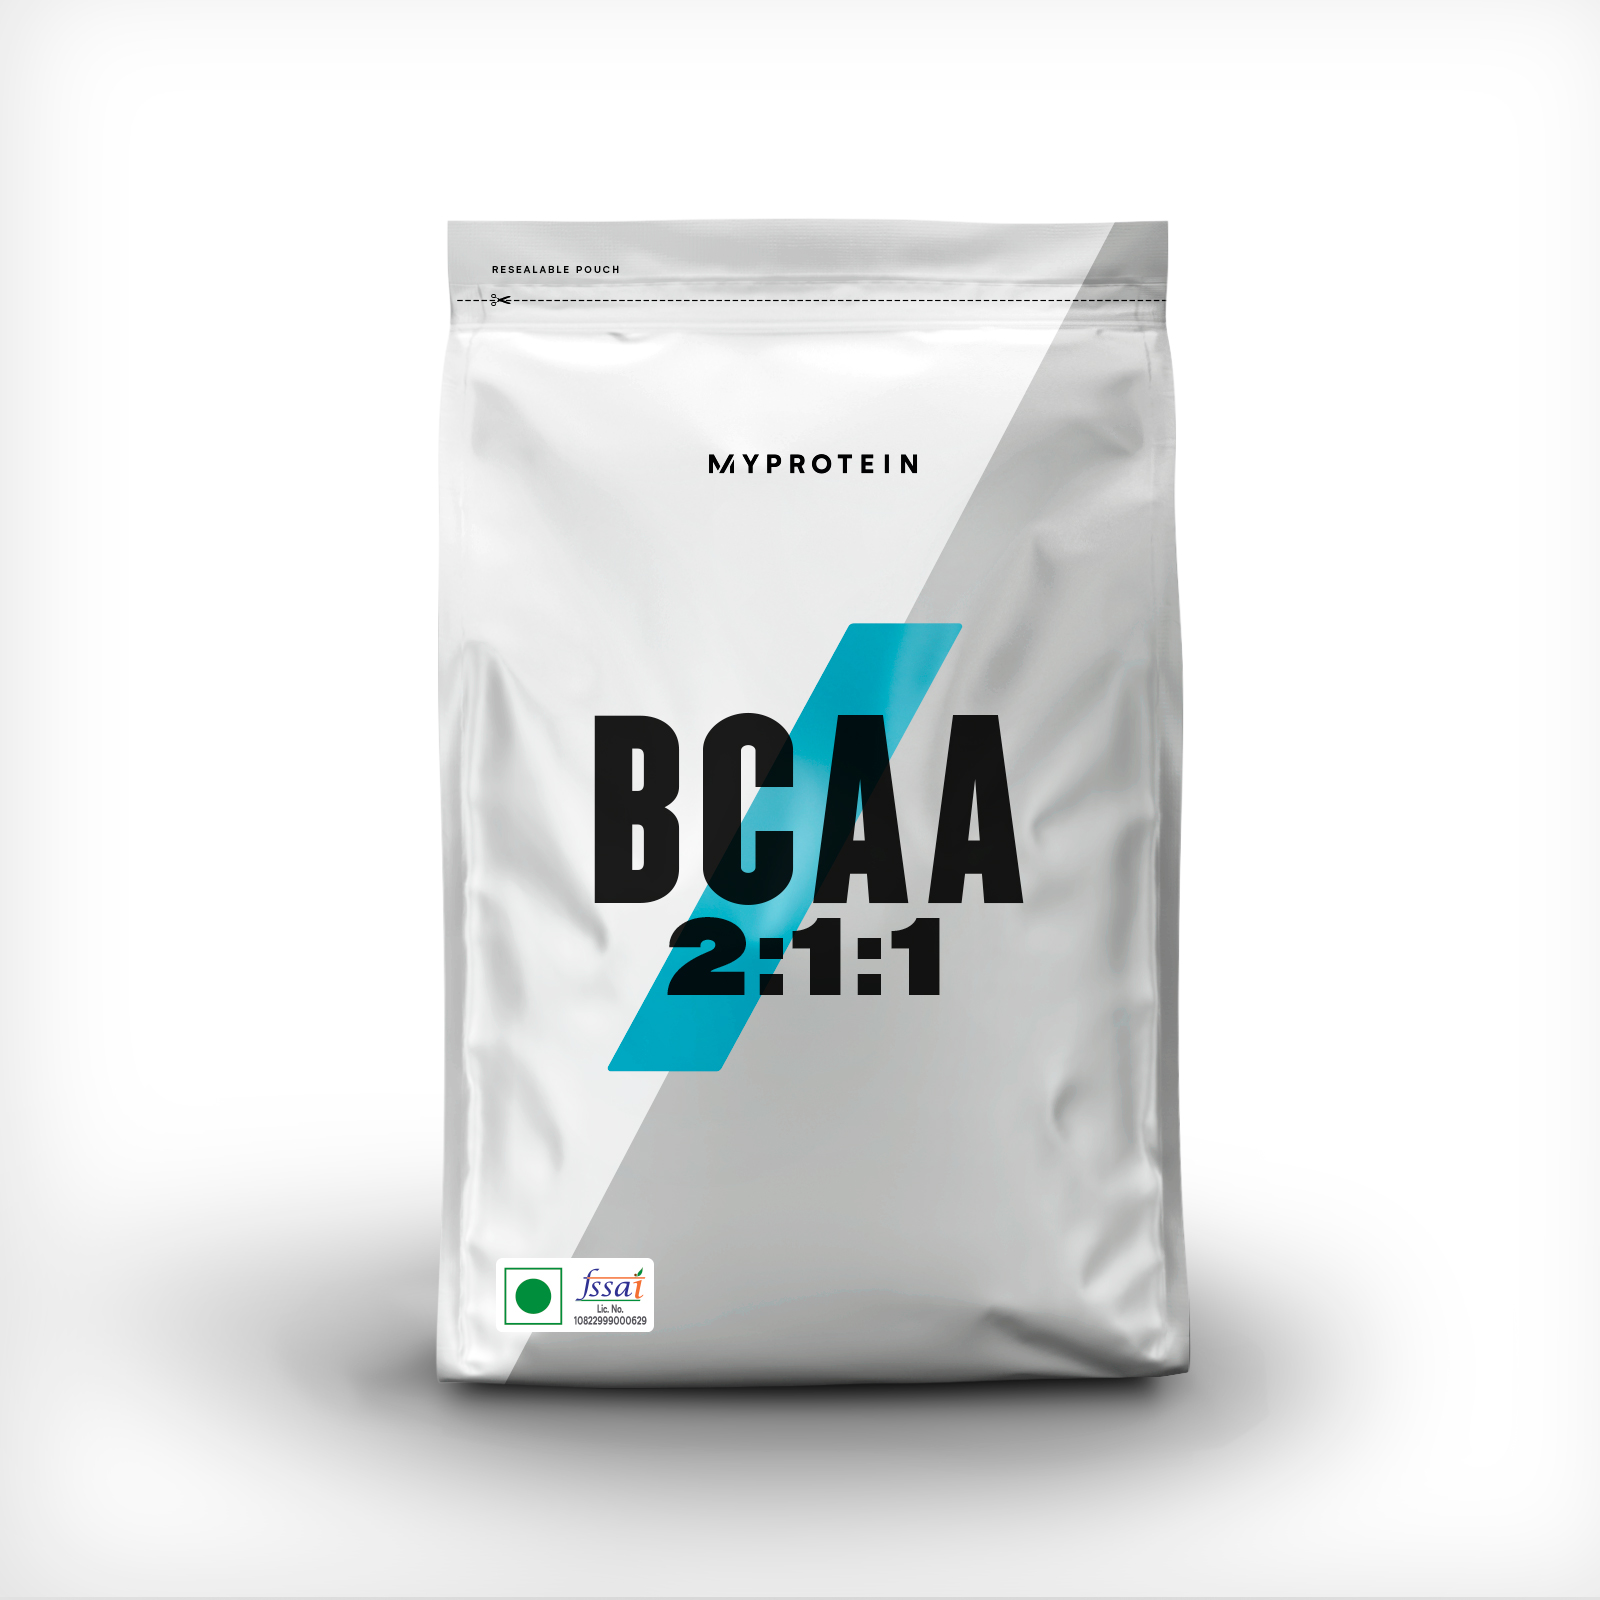 BCAA 2:1:1 Powder - 500g - Unflavoured